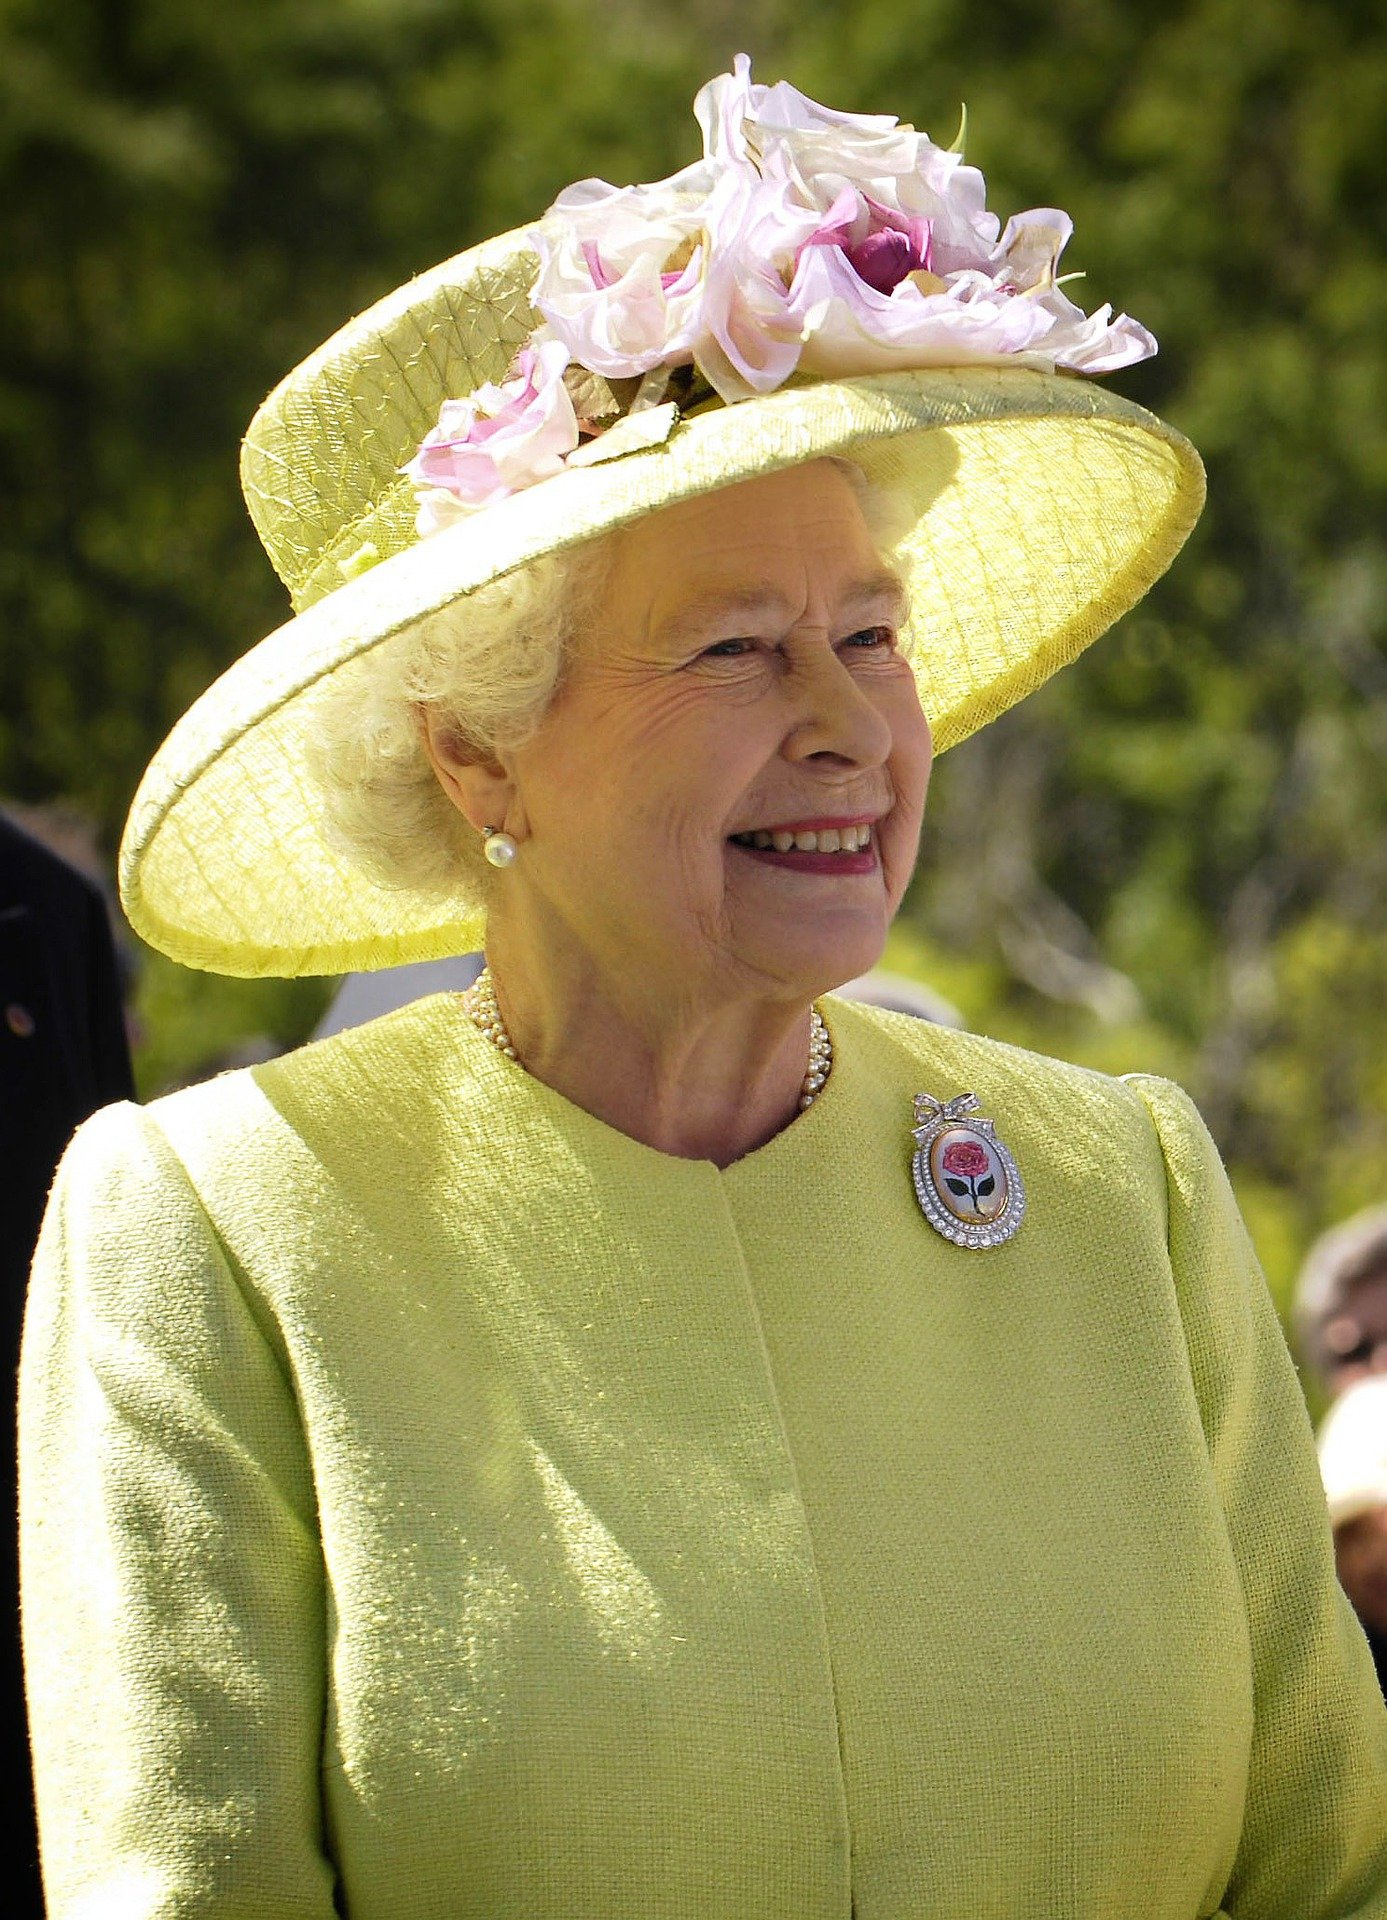 ब्रिटेन की महारानी Queen Elizabeth II का निधन: आगे क्या होगा?